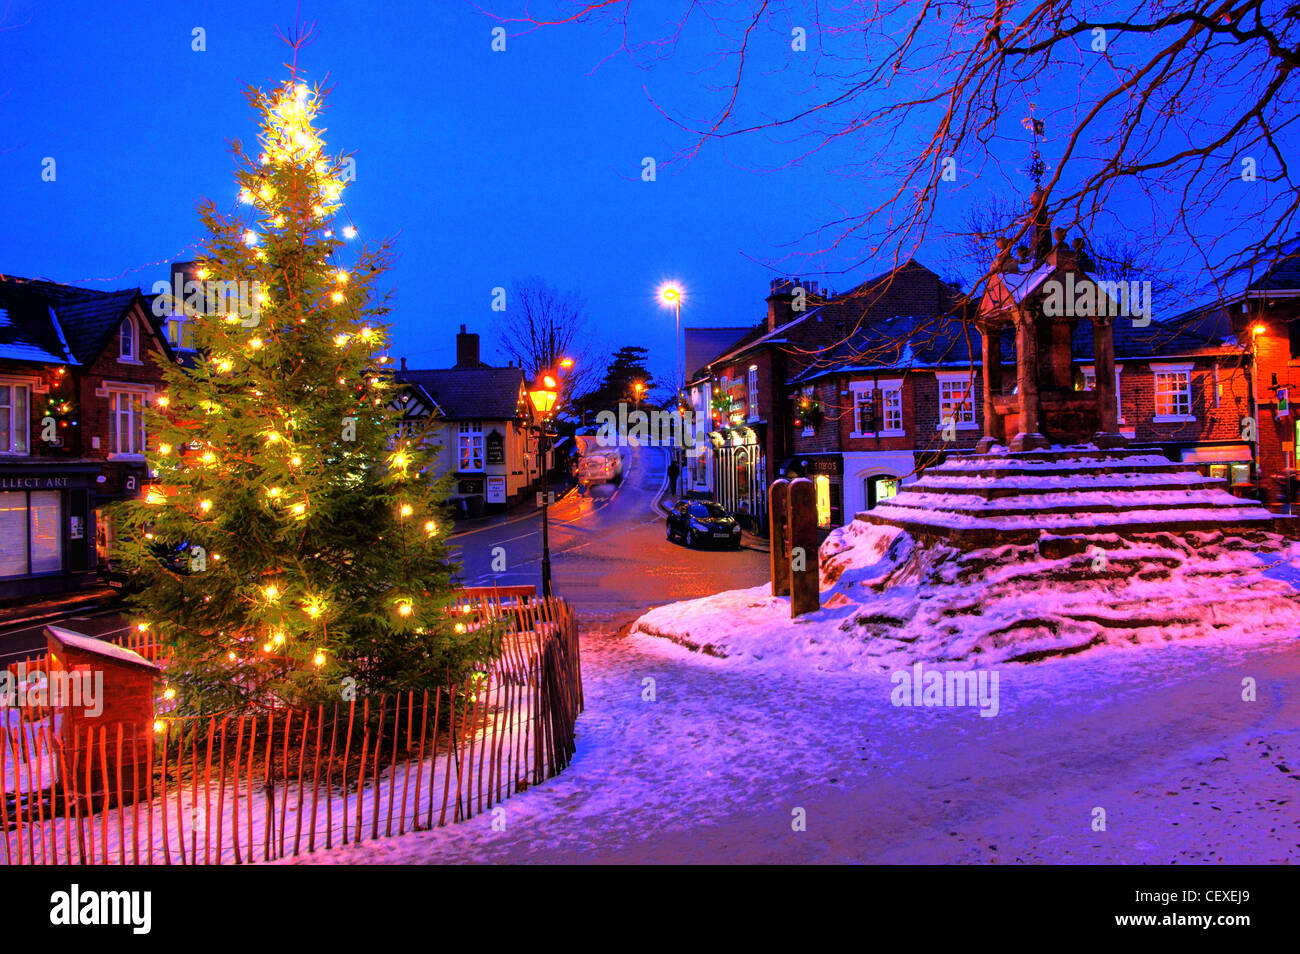 Weihnachten frostige Festszene mit Schnee, am Weihnachtsbaum bei Lymm Cross, Lymm Village, Warrington, Cheshire, England, UK Stockfoto